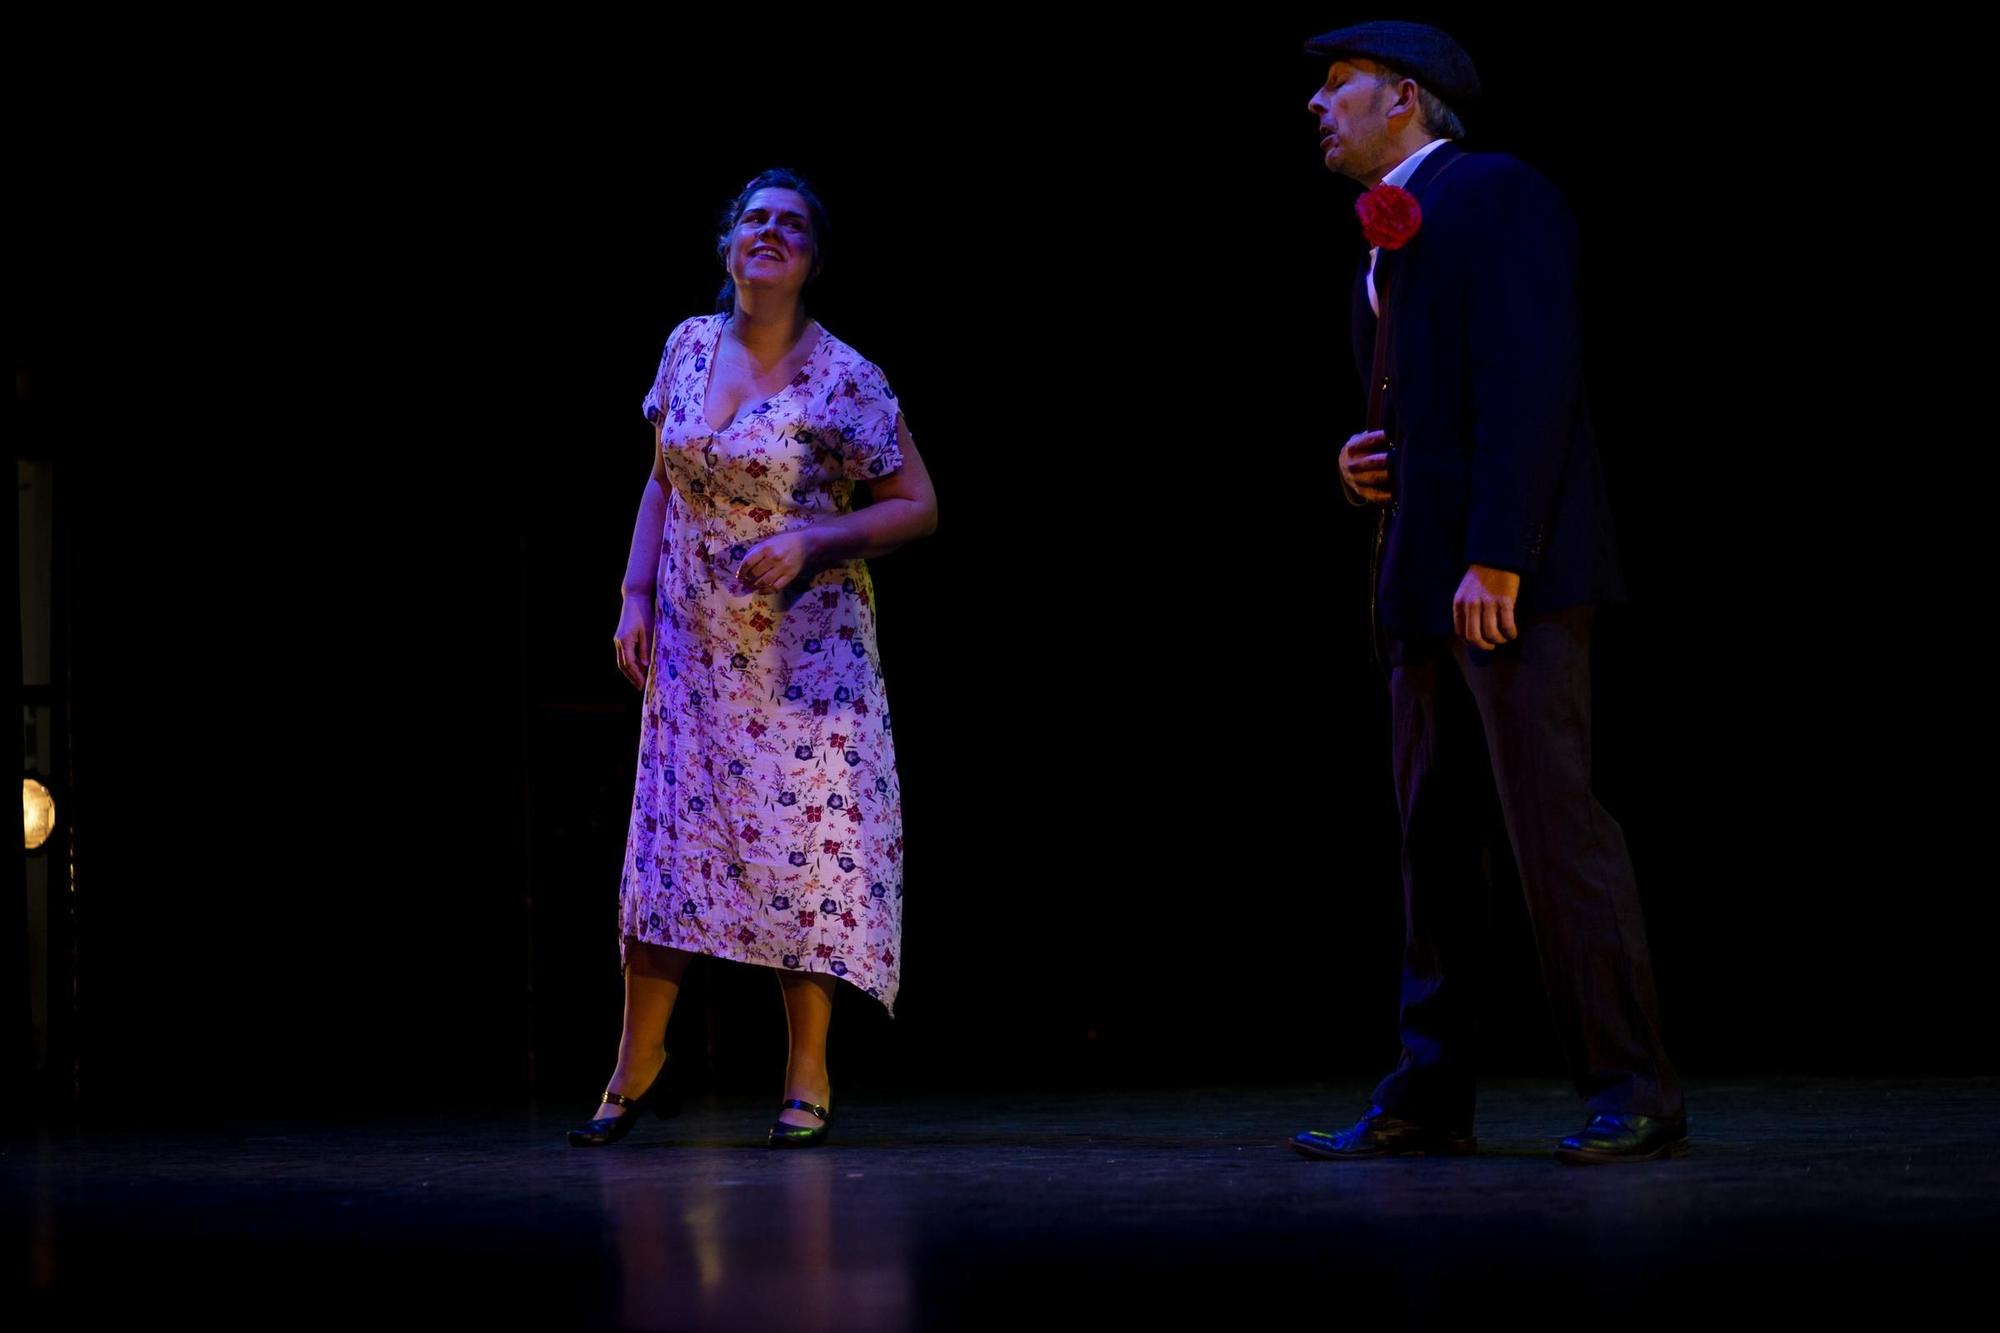 Galería | El eterno debate sobre los cuernos, en el Gran Teatro de Cáceres